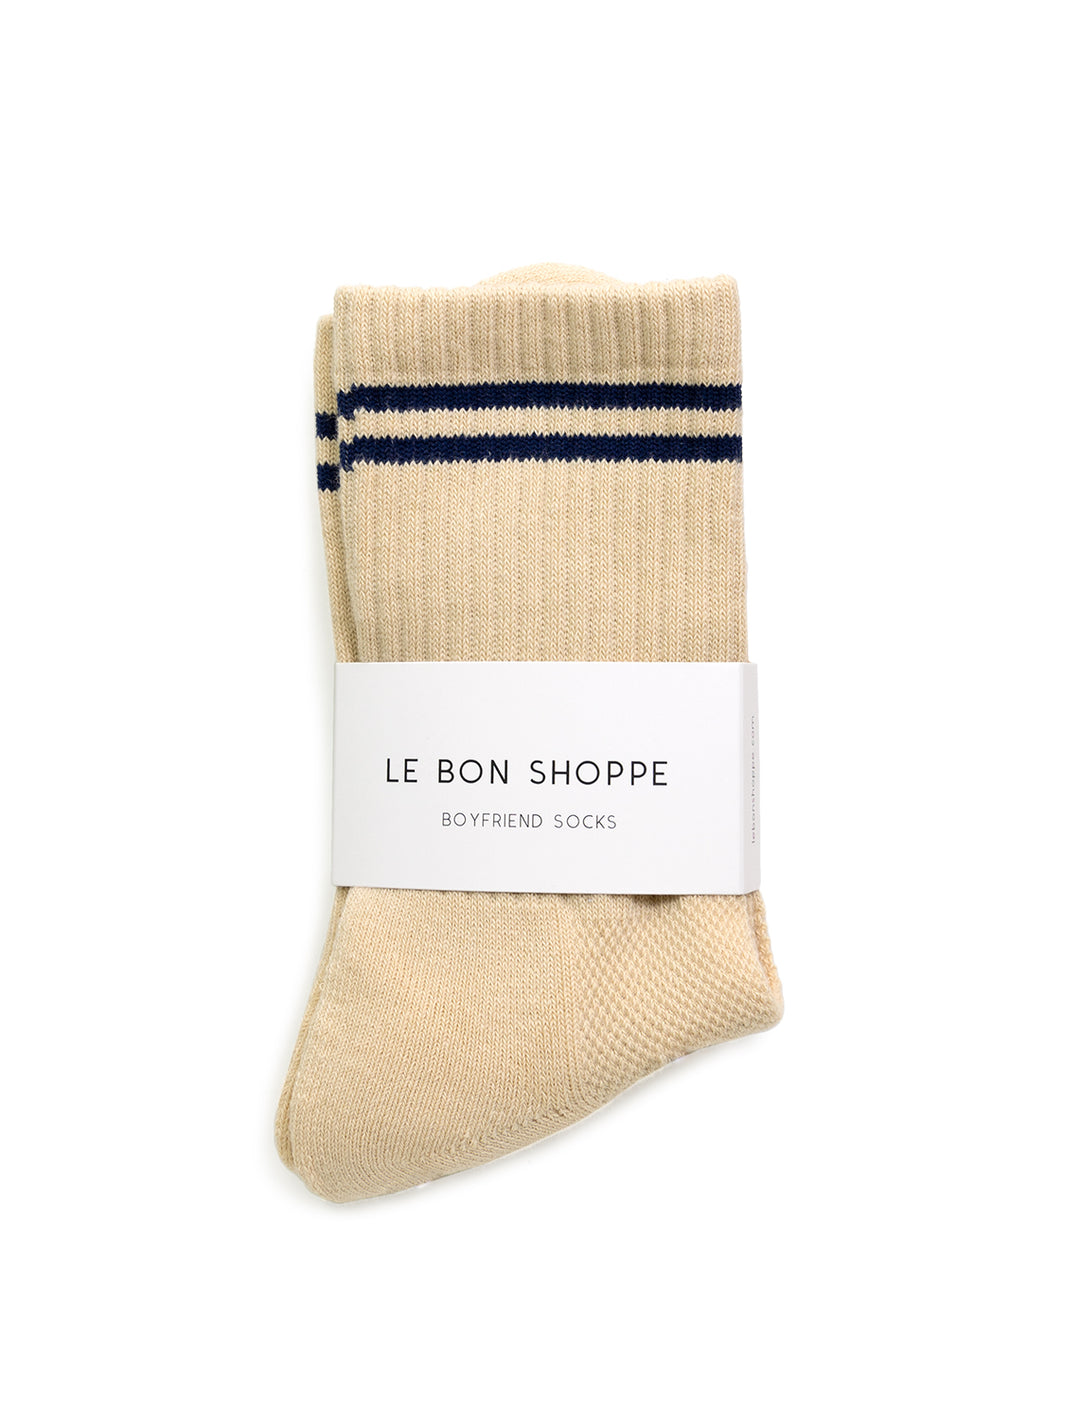 Front view of Le Bon Shoppe's boyfriend socks in cashew.